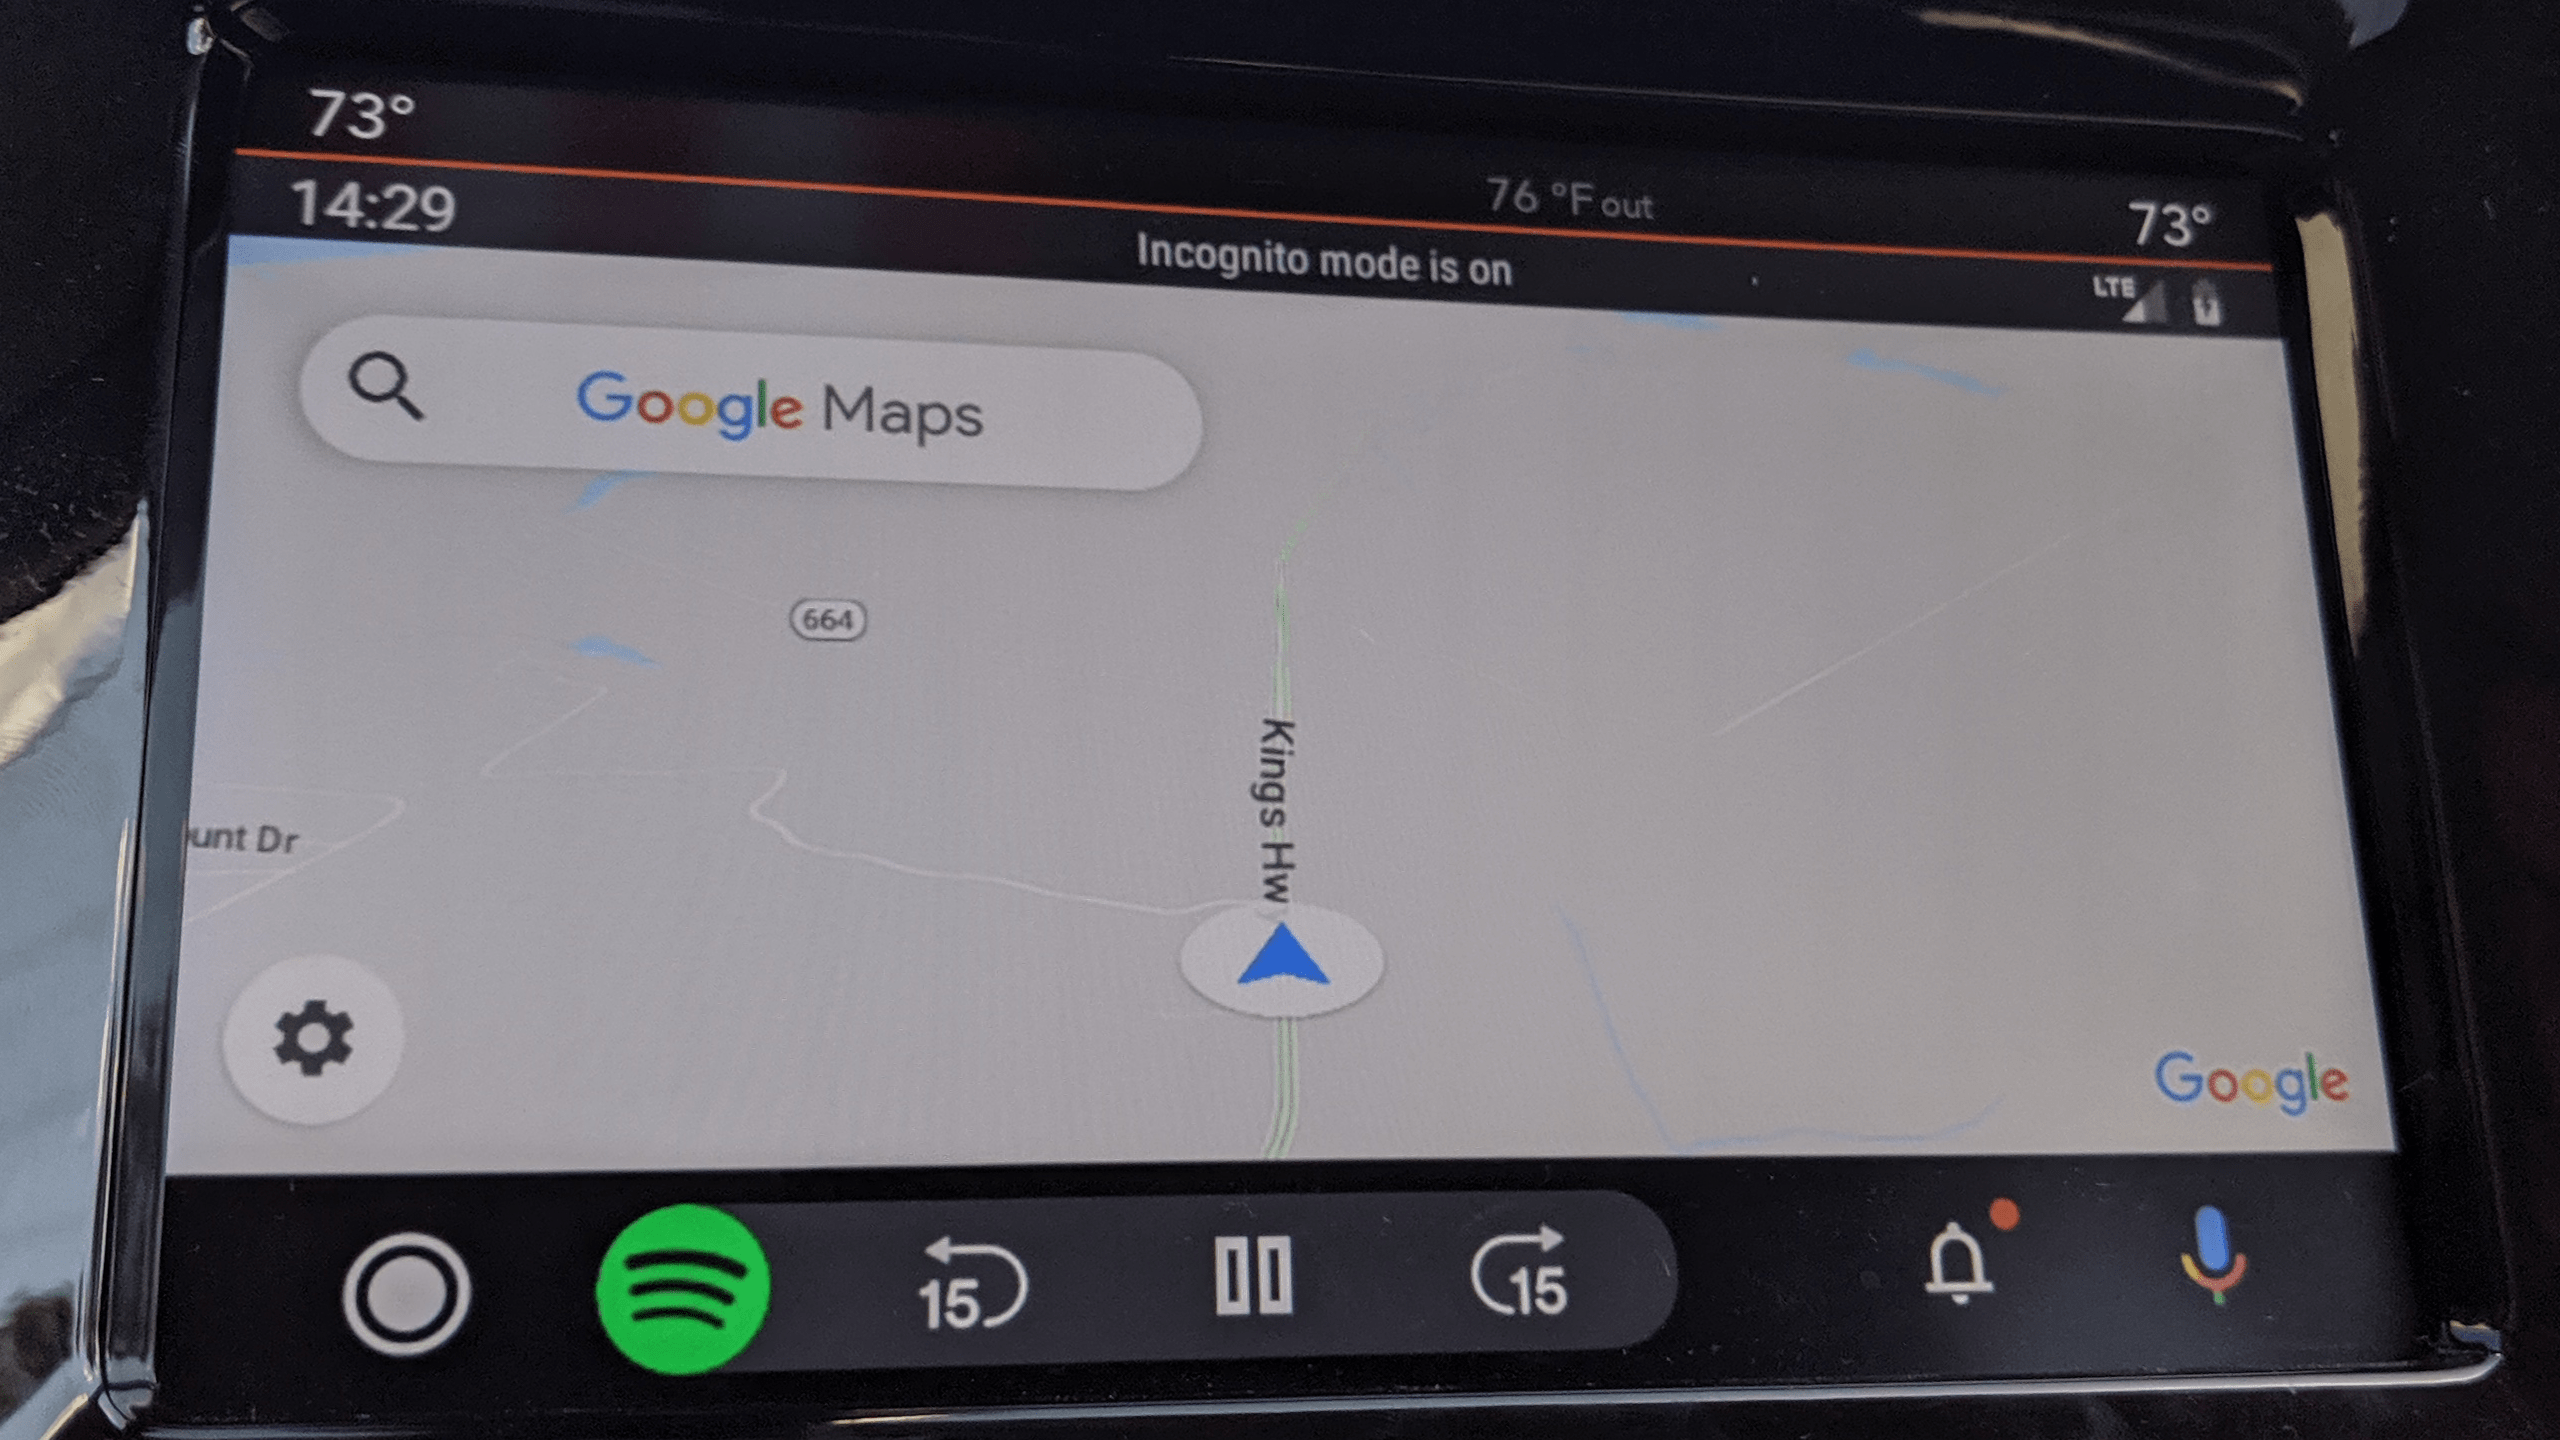 Google Maps bắt đầu
cập nhật chế độ Ẩn danh trên nền tảng Android